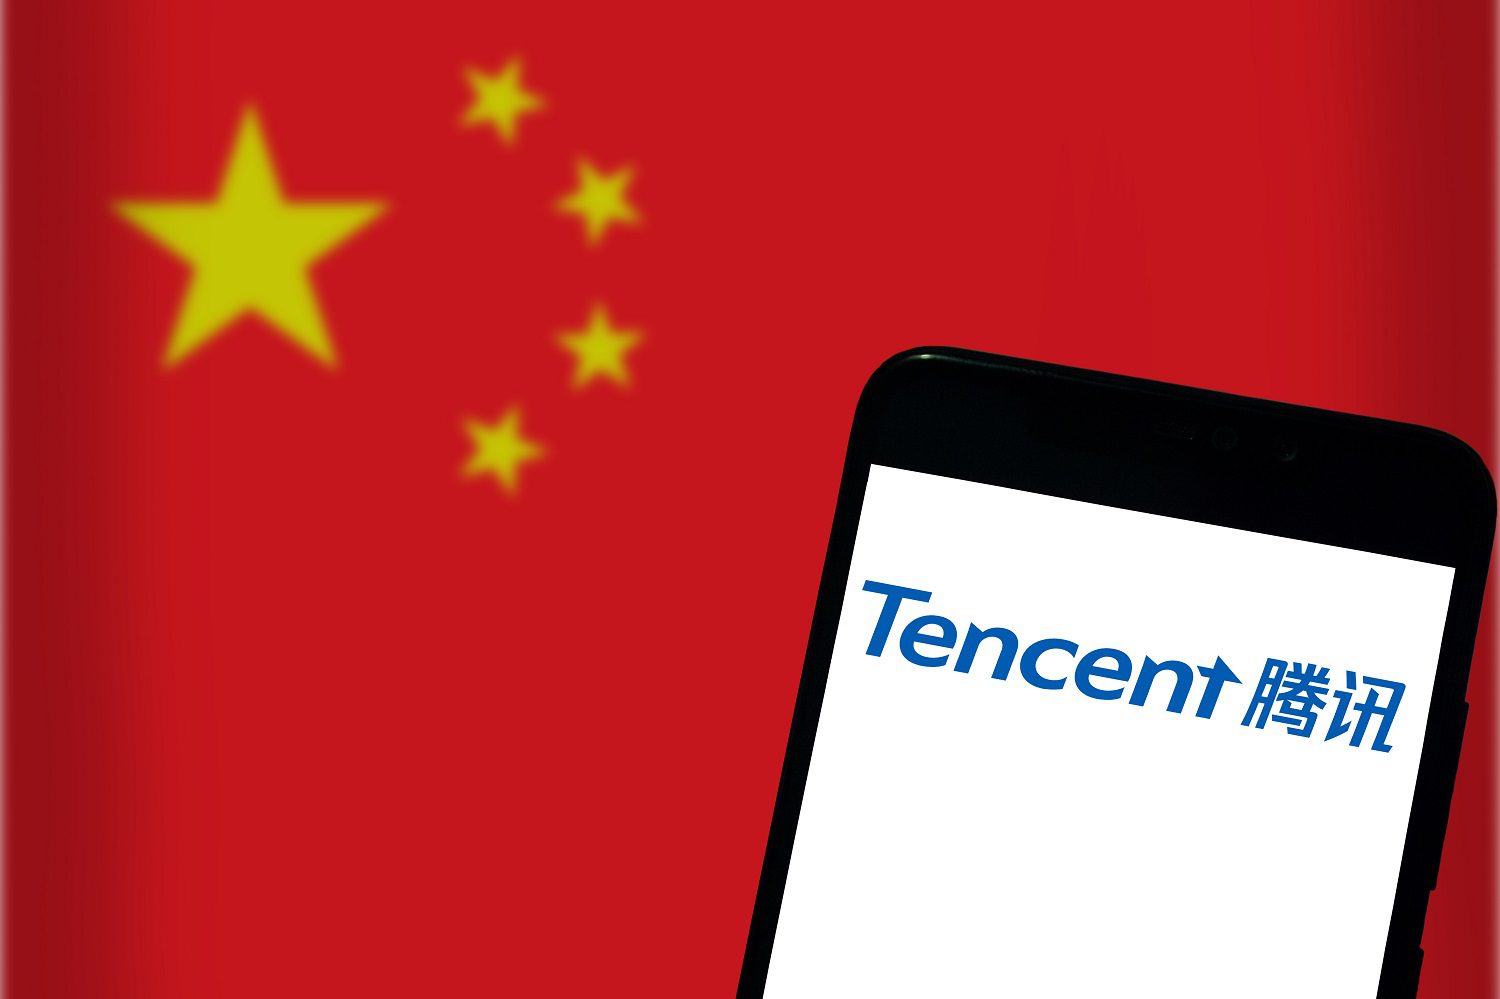 El logotipo de Tencent en la pantalla de un teléfono móvil con el telón de fondo de una bandera china.